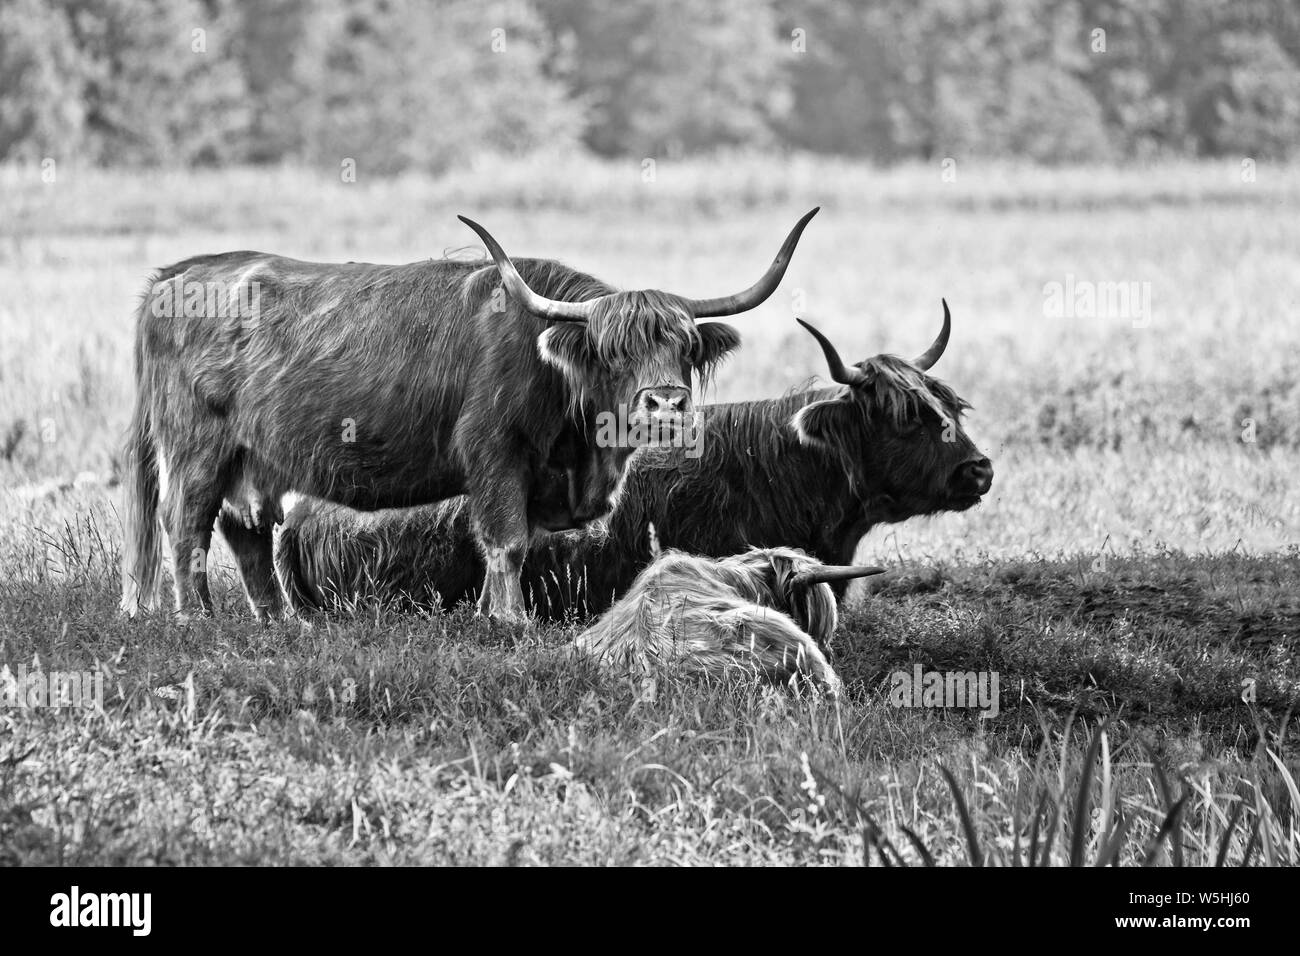 Les vaches Highland cattle dans les pâturages de la famille, image en noir et blanc. Ces animaux ont des cornes longues et ondulées long manteaux. Ils ont été créés dans les highlands et Banque D'Images